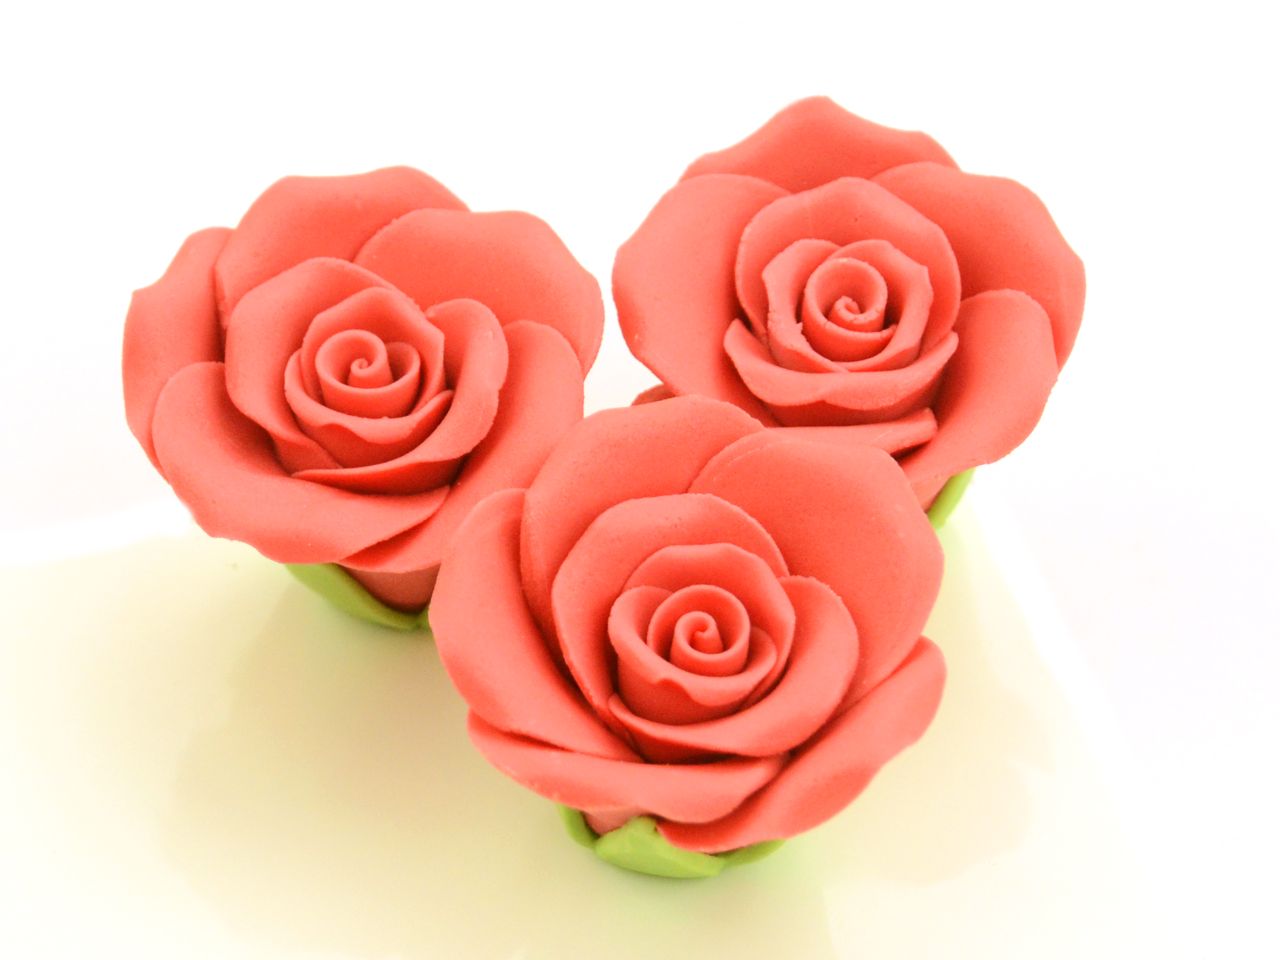 Zucker-Rosen, Rot, 3 Stück, 3,5 x 3 cm